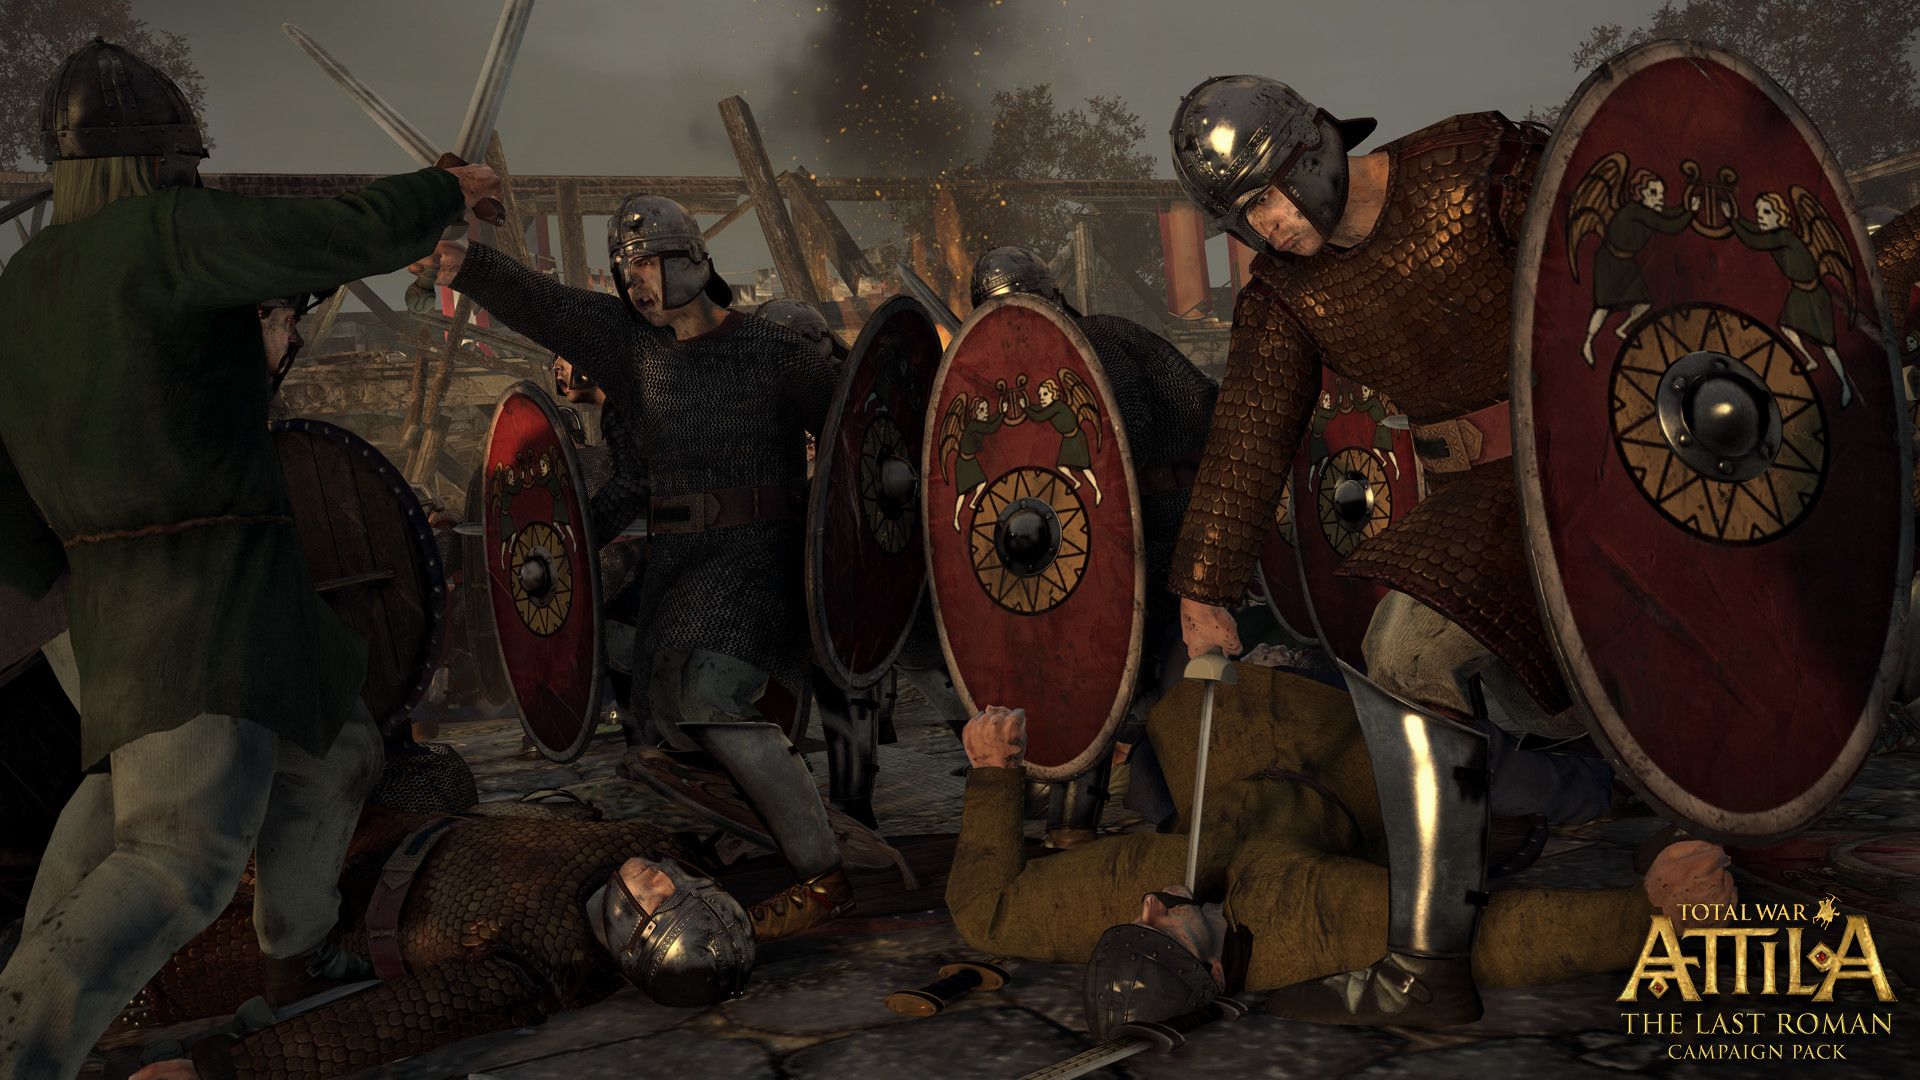 Total War: Attila Wallpapers